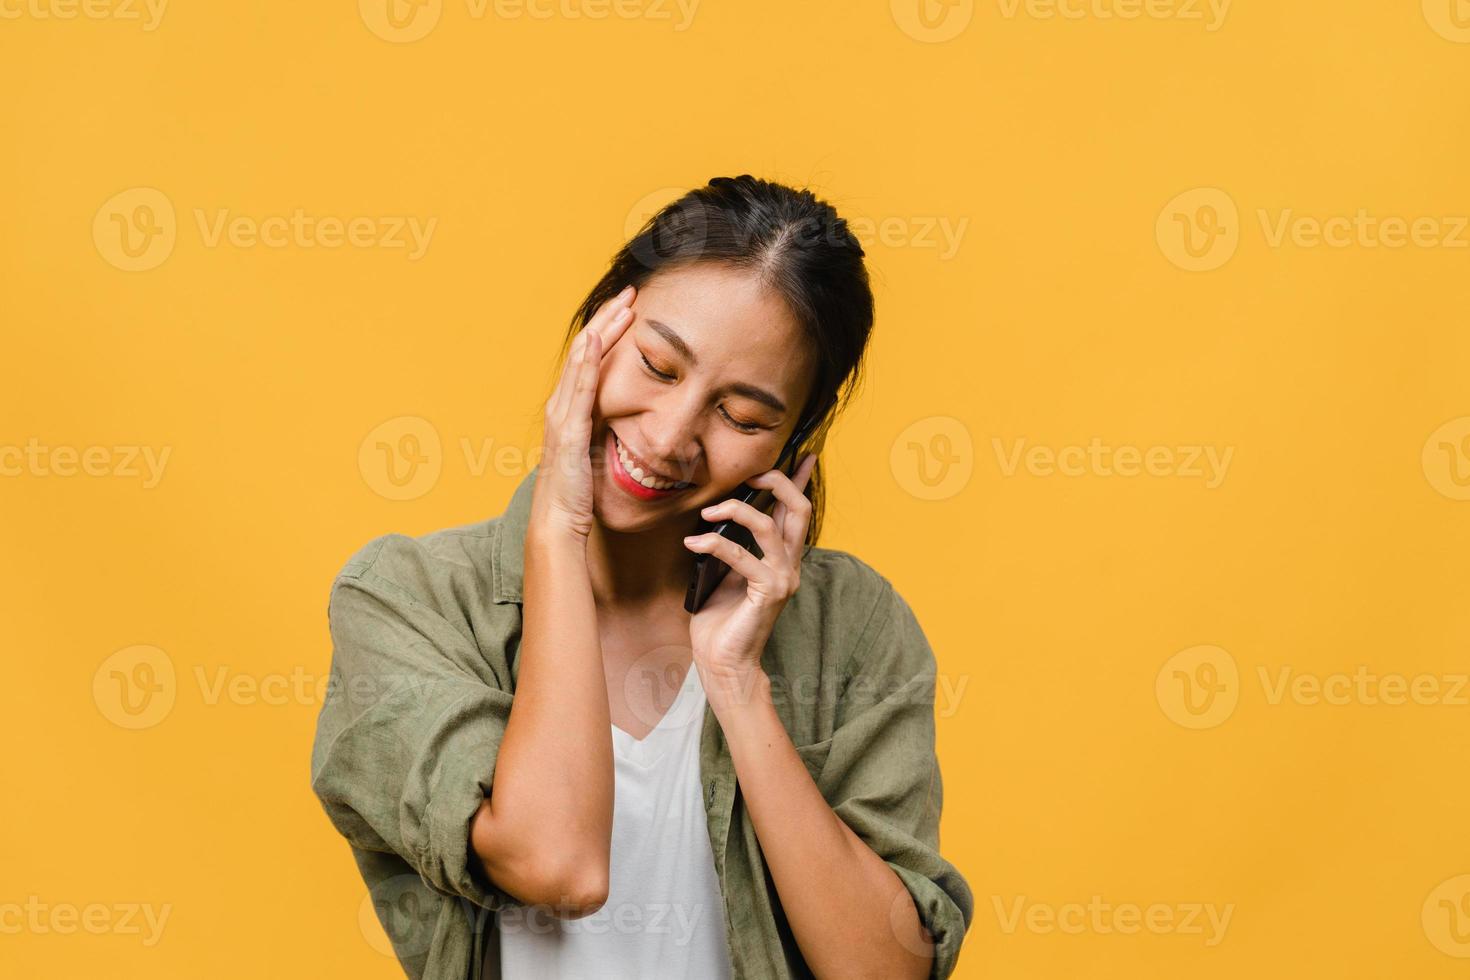 Jovencita asiática habla por teléfono con expresión positiva, sonríe ampliamente, vestida con ropa informal sintiendo felicidad y parada aislada sobre fondo amarillo. feliz adorable mujer alegre se regocija con el éxito. foto